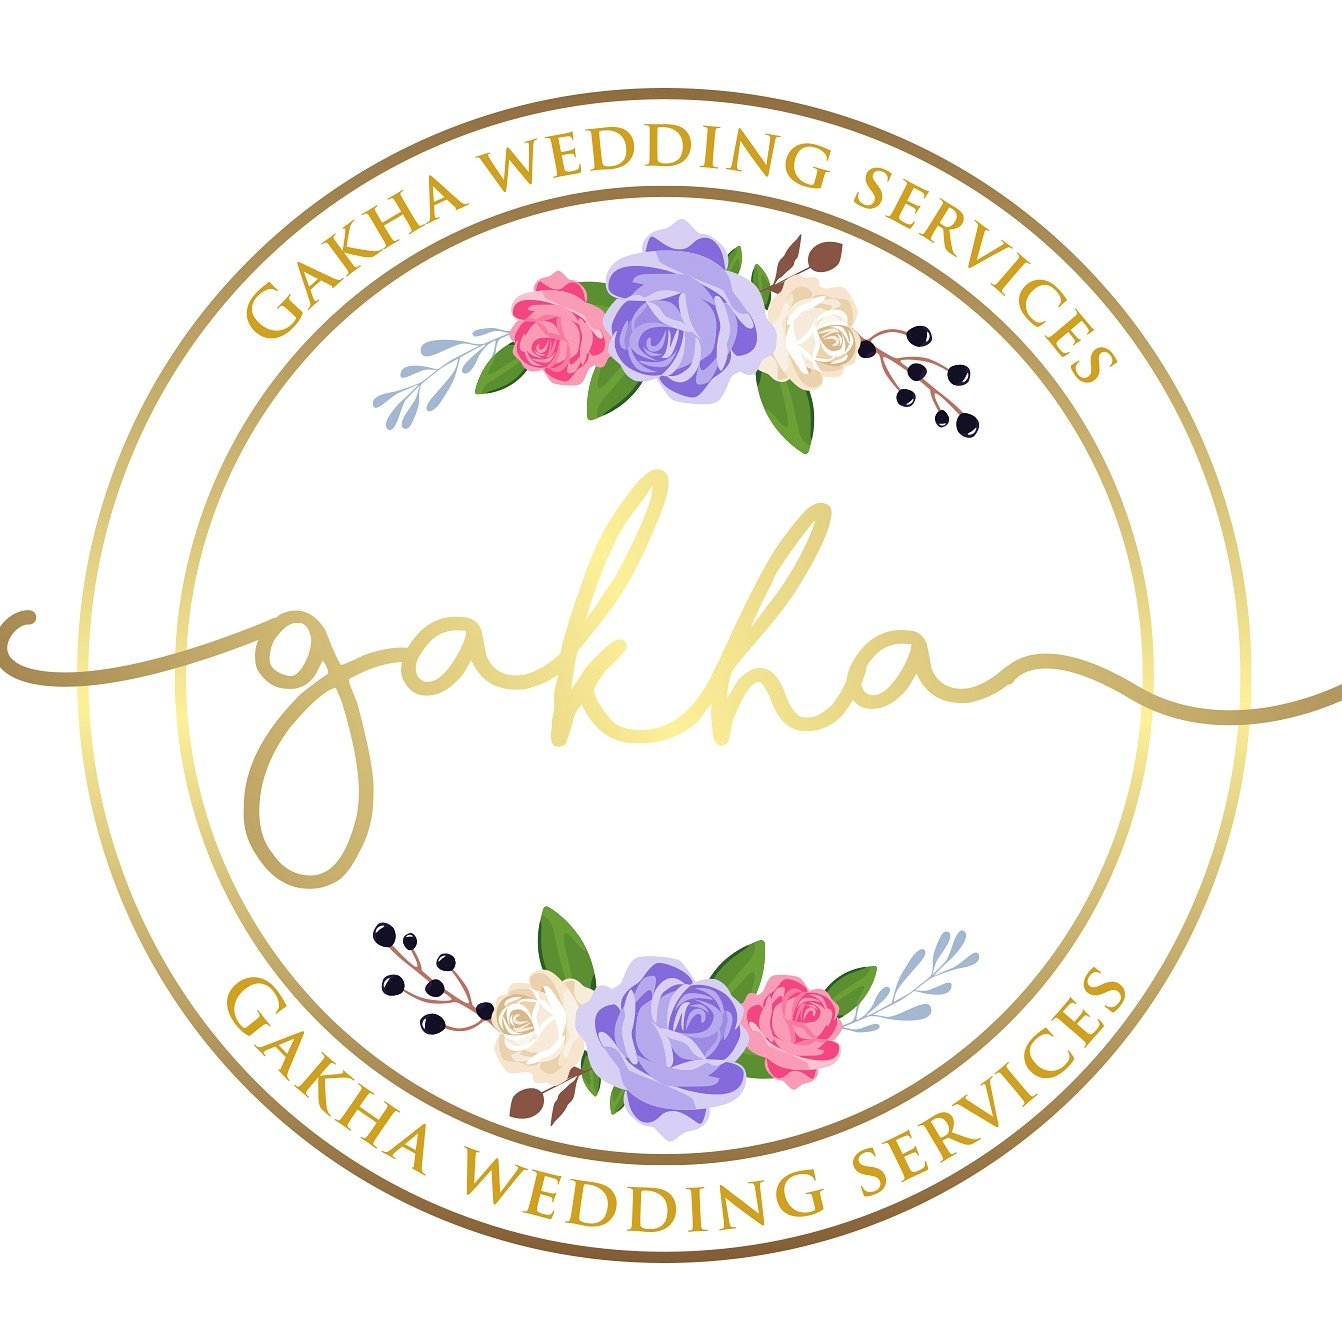 Gakha Wedding Service